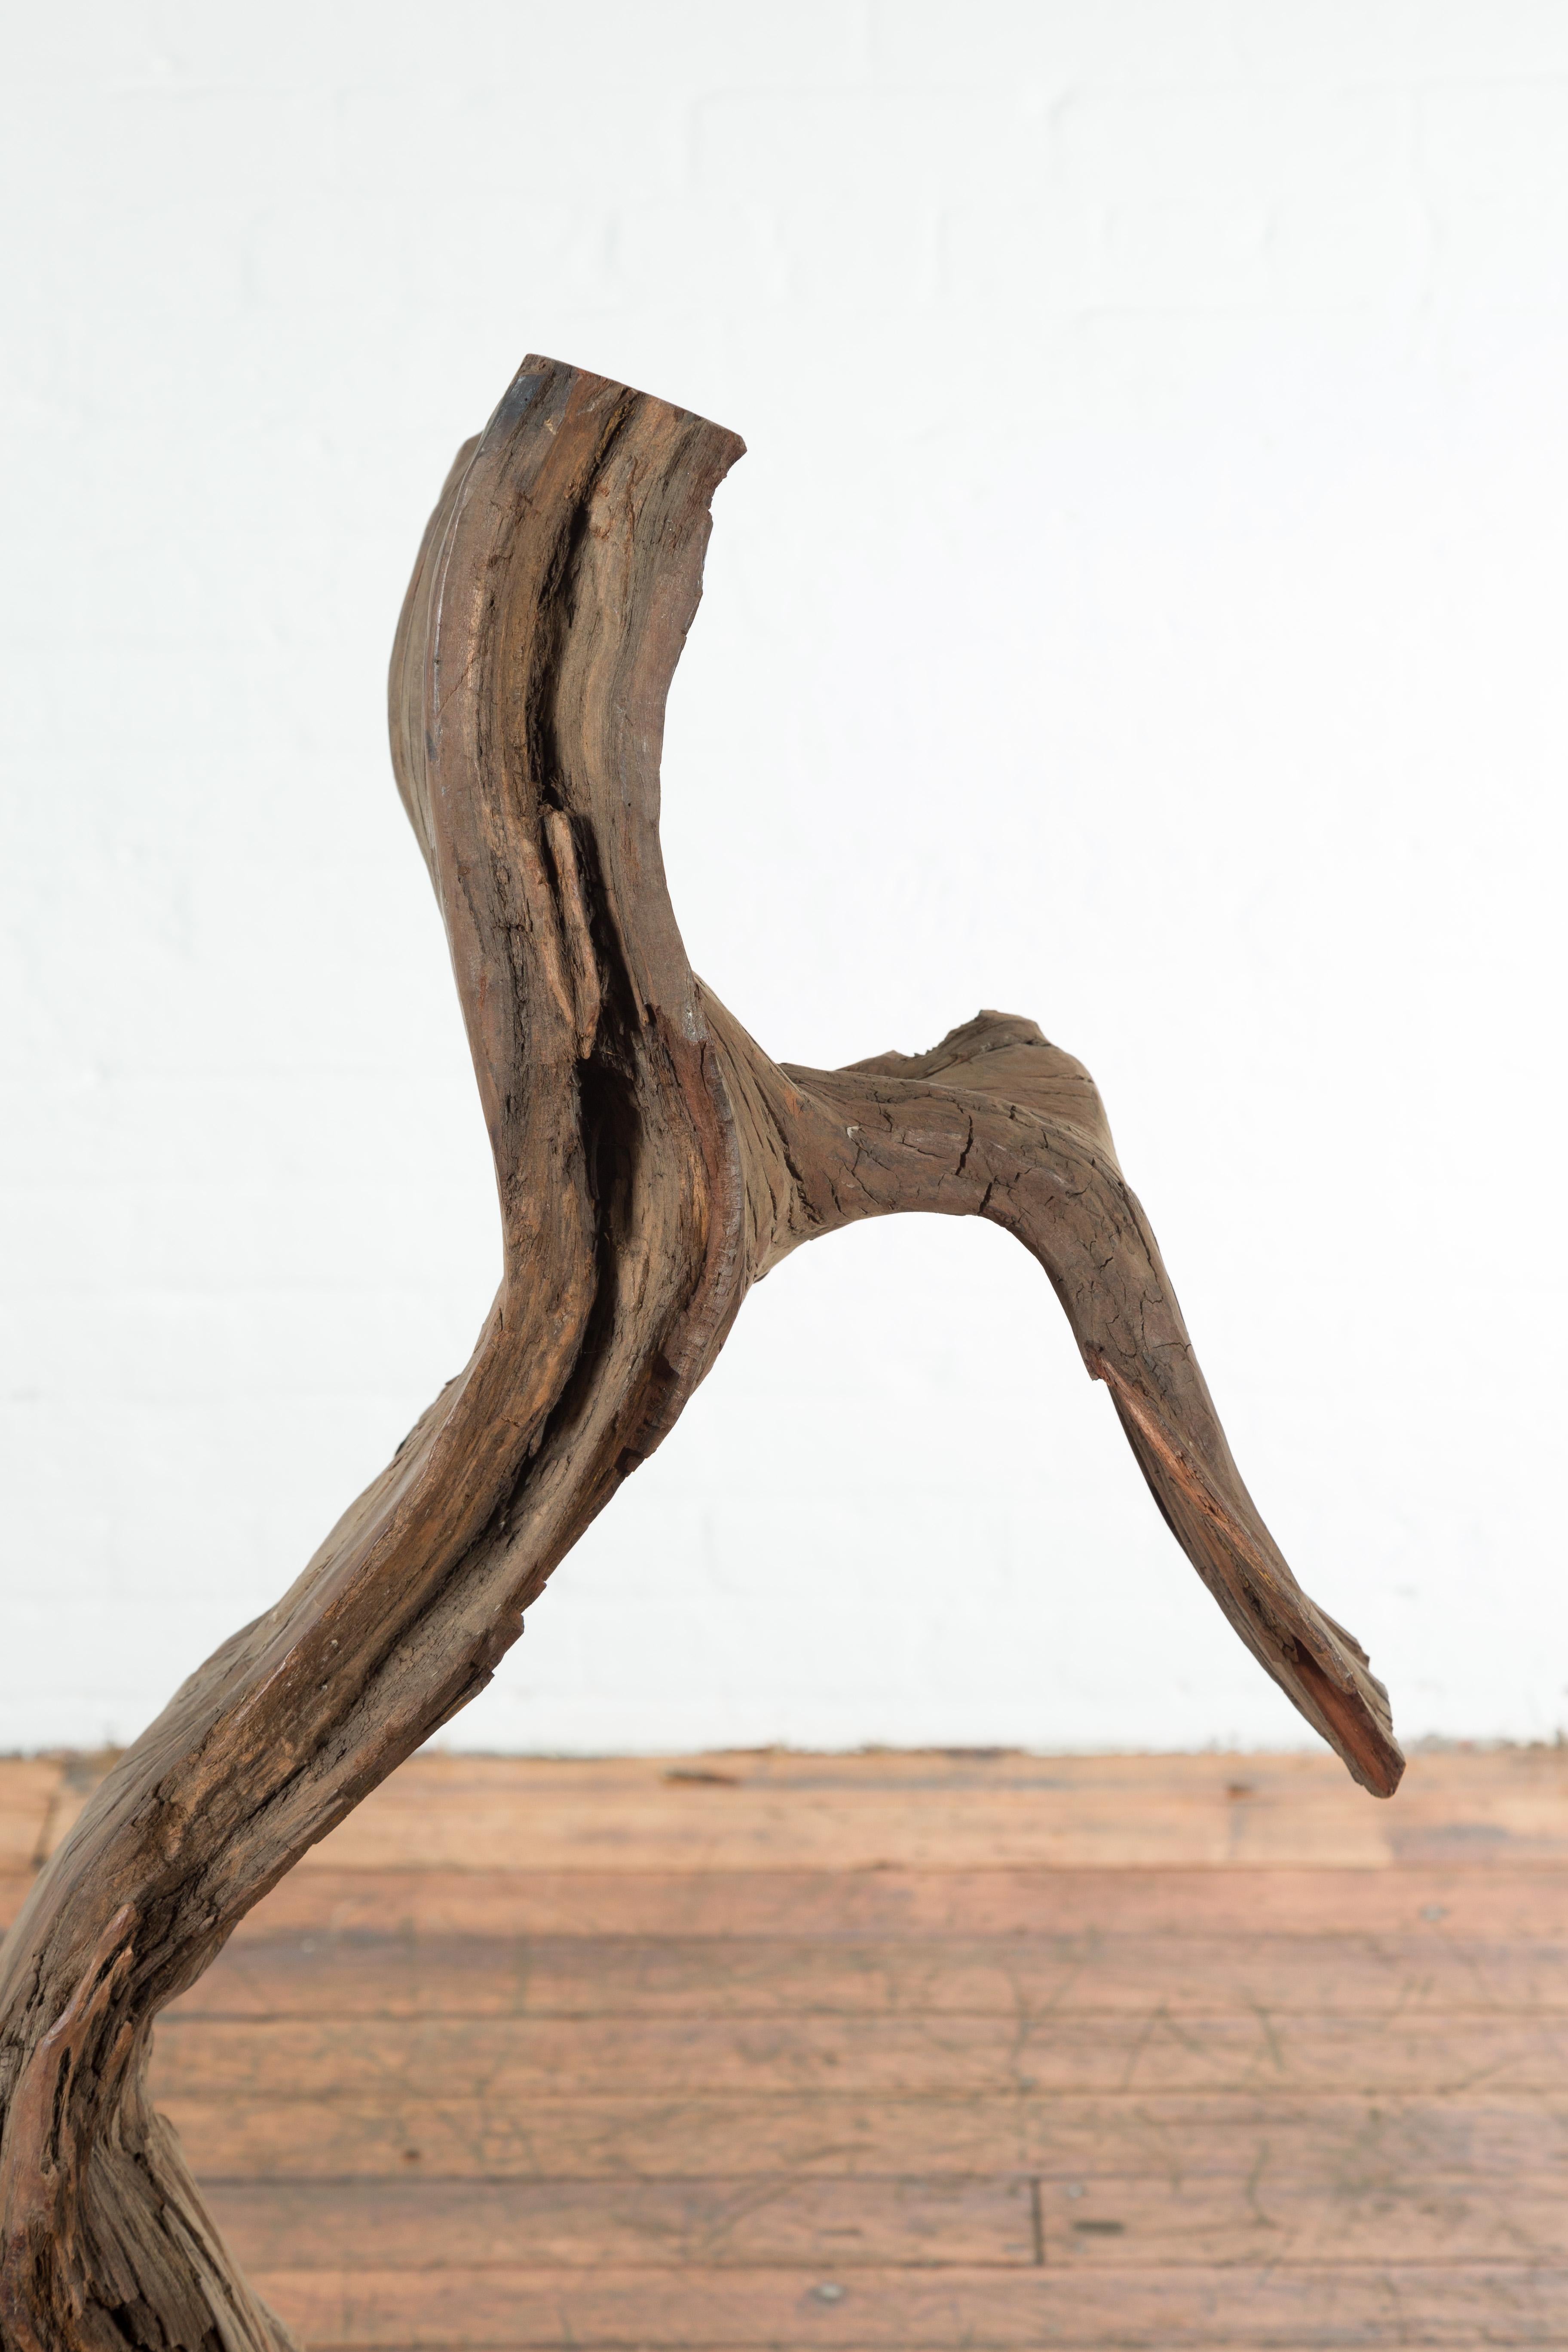 Un fragment de bois de rivière indonésien antique qui pourrait être utilisé comme sculpture ou banc décoratif. Cette sculpture d'arbre charismatique a été trouvée près d'une rivière et présente une Silhouette rustique, haute et étroite. Parfaite